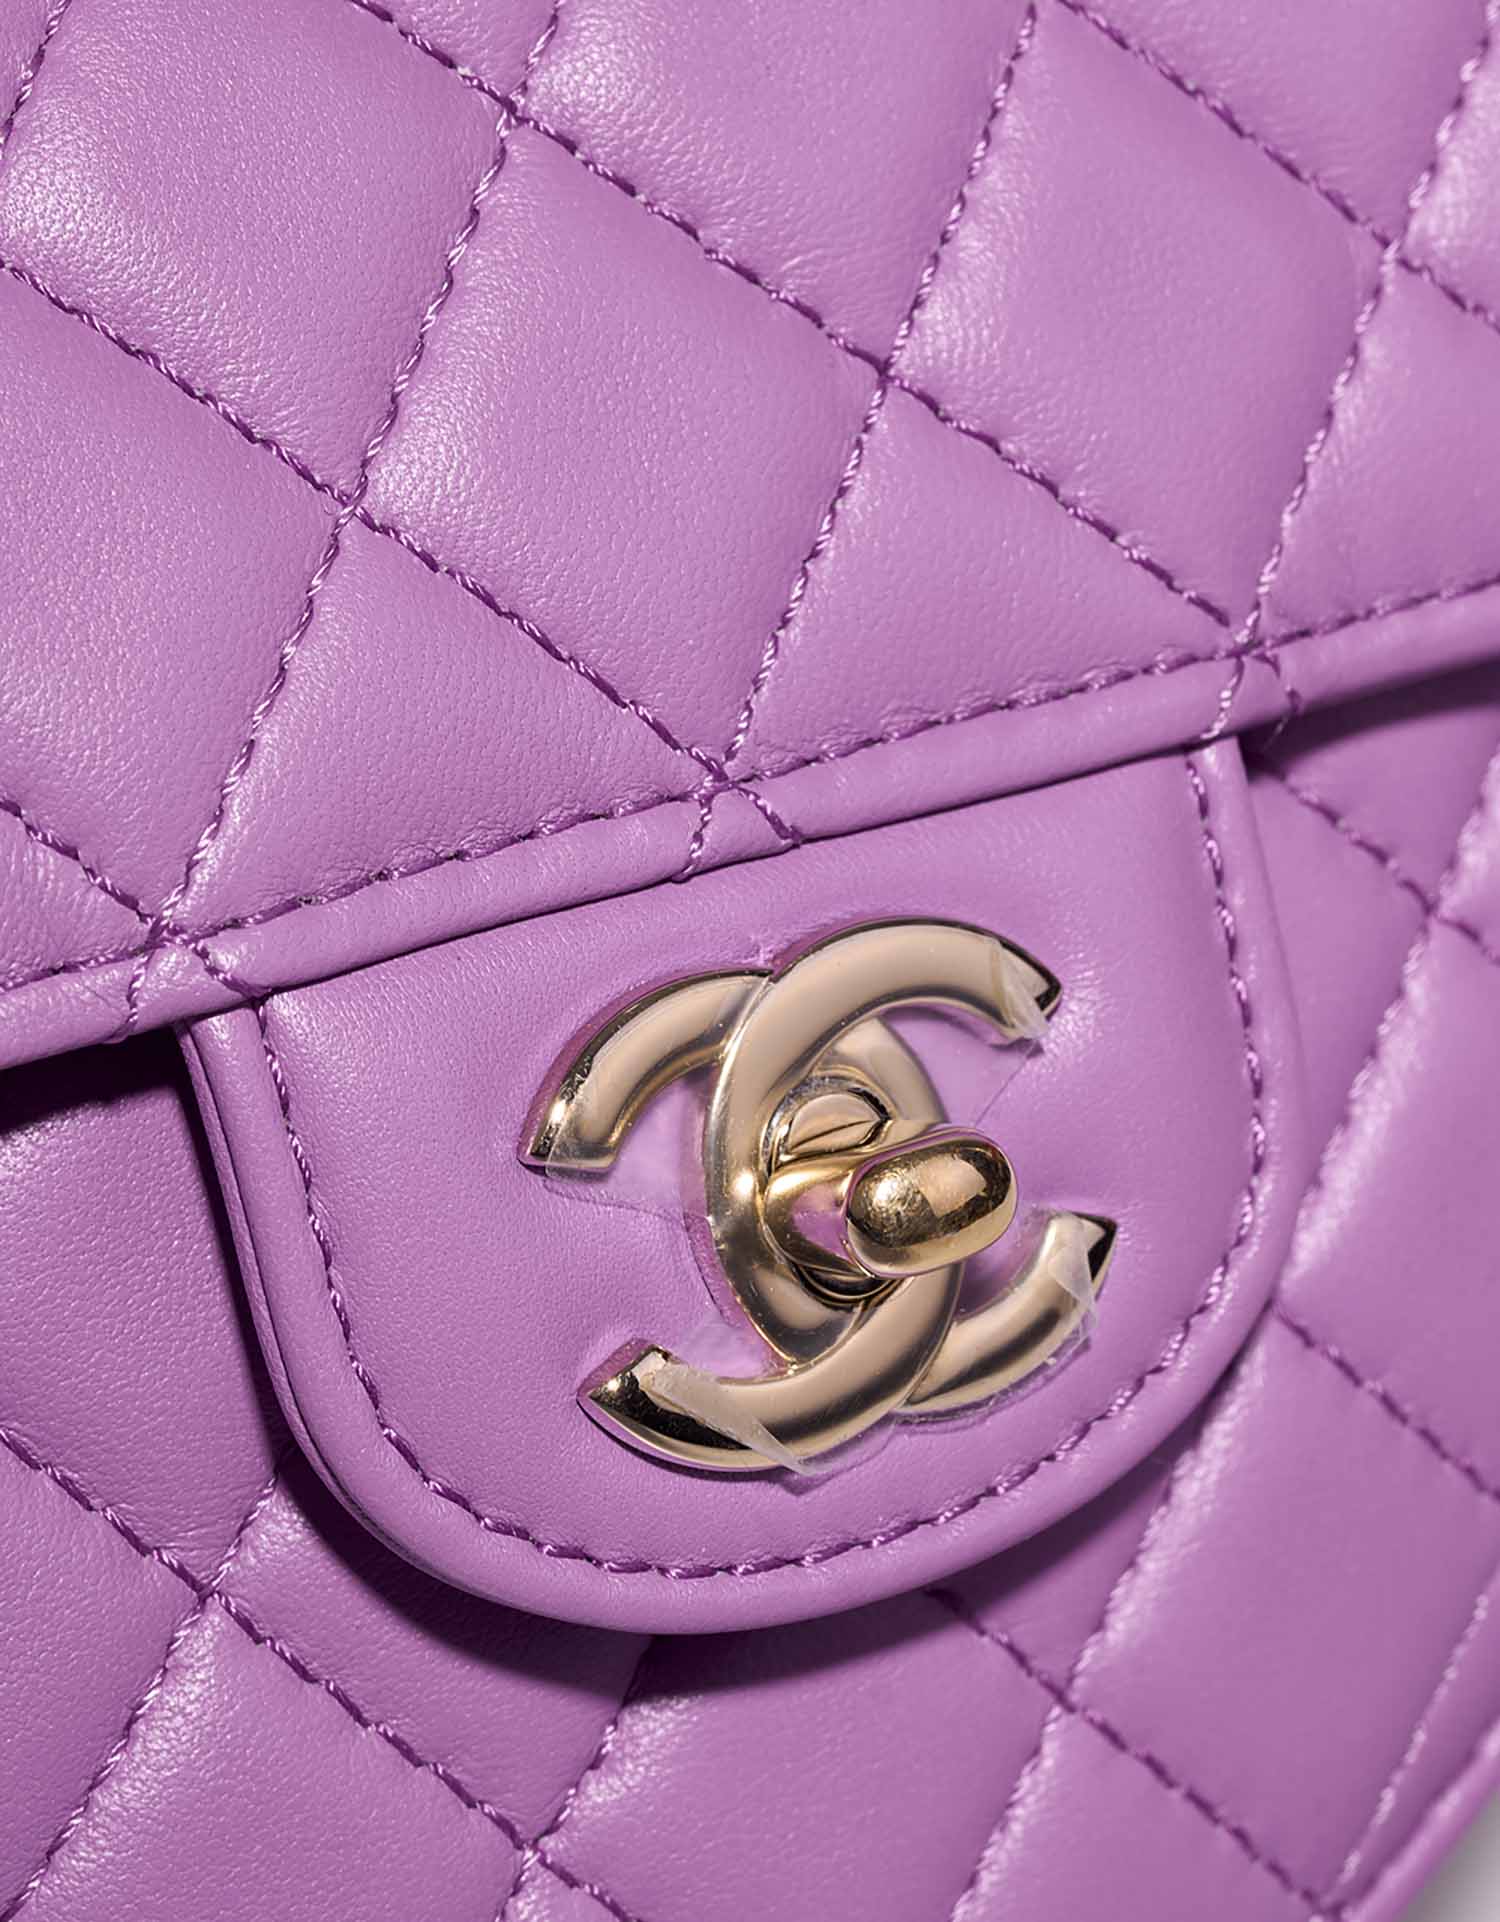 Chanel TimelessHeart Medium Violet Verschluss-System | Verkaufen Sie Ihre Designer-Tasche auf Saclab.com